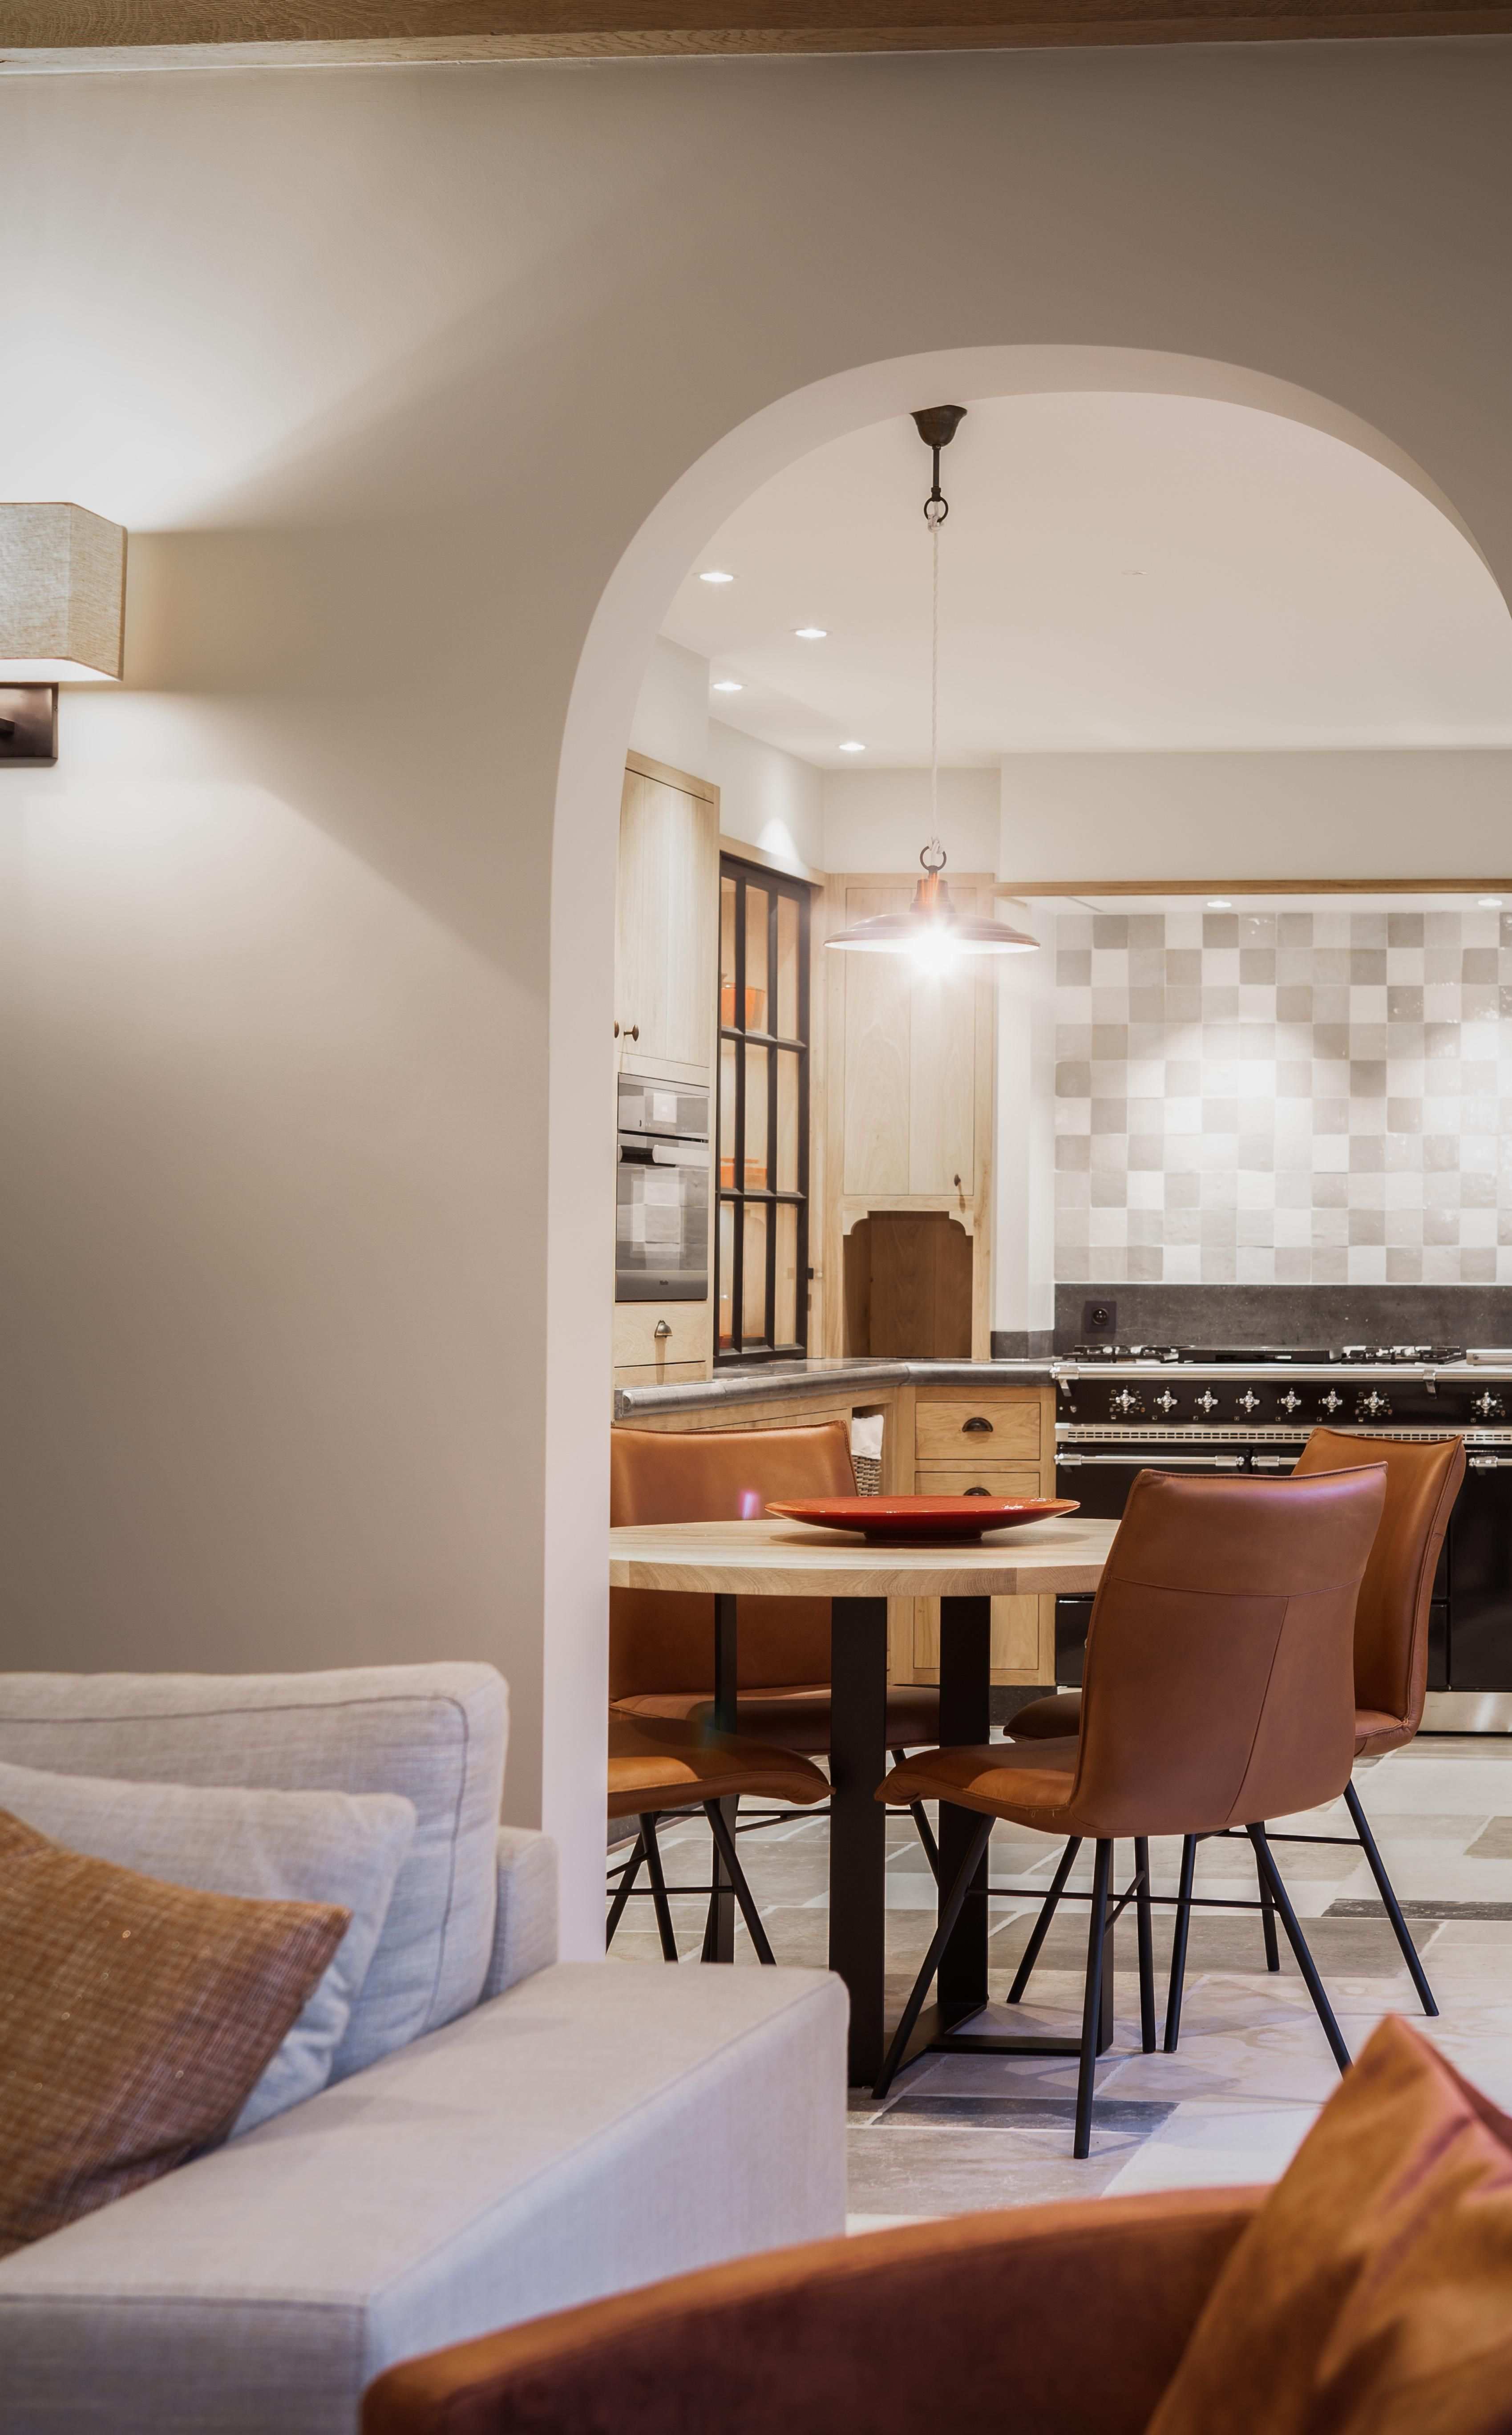 Home Interiors Nl In 2020 Gezellig Interieur Ideeen Voor Thuisdecoratie Woonkamer Inspiratie